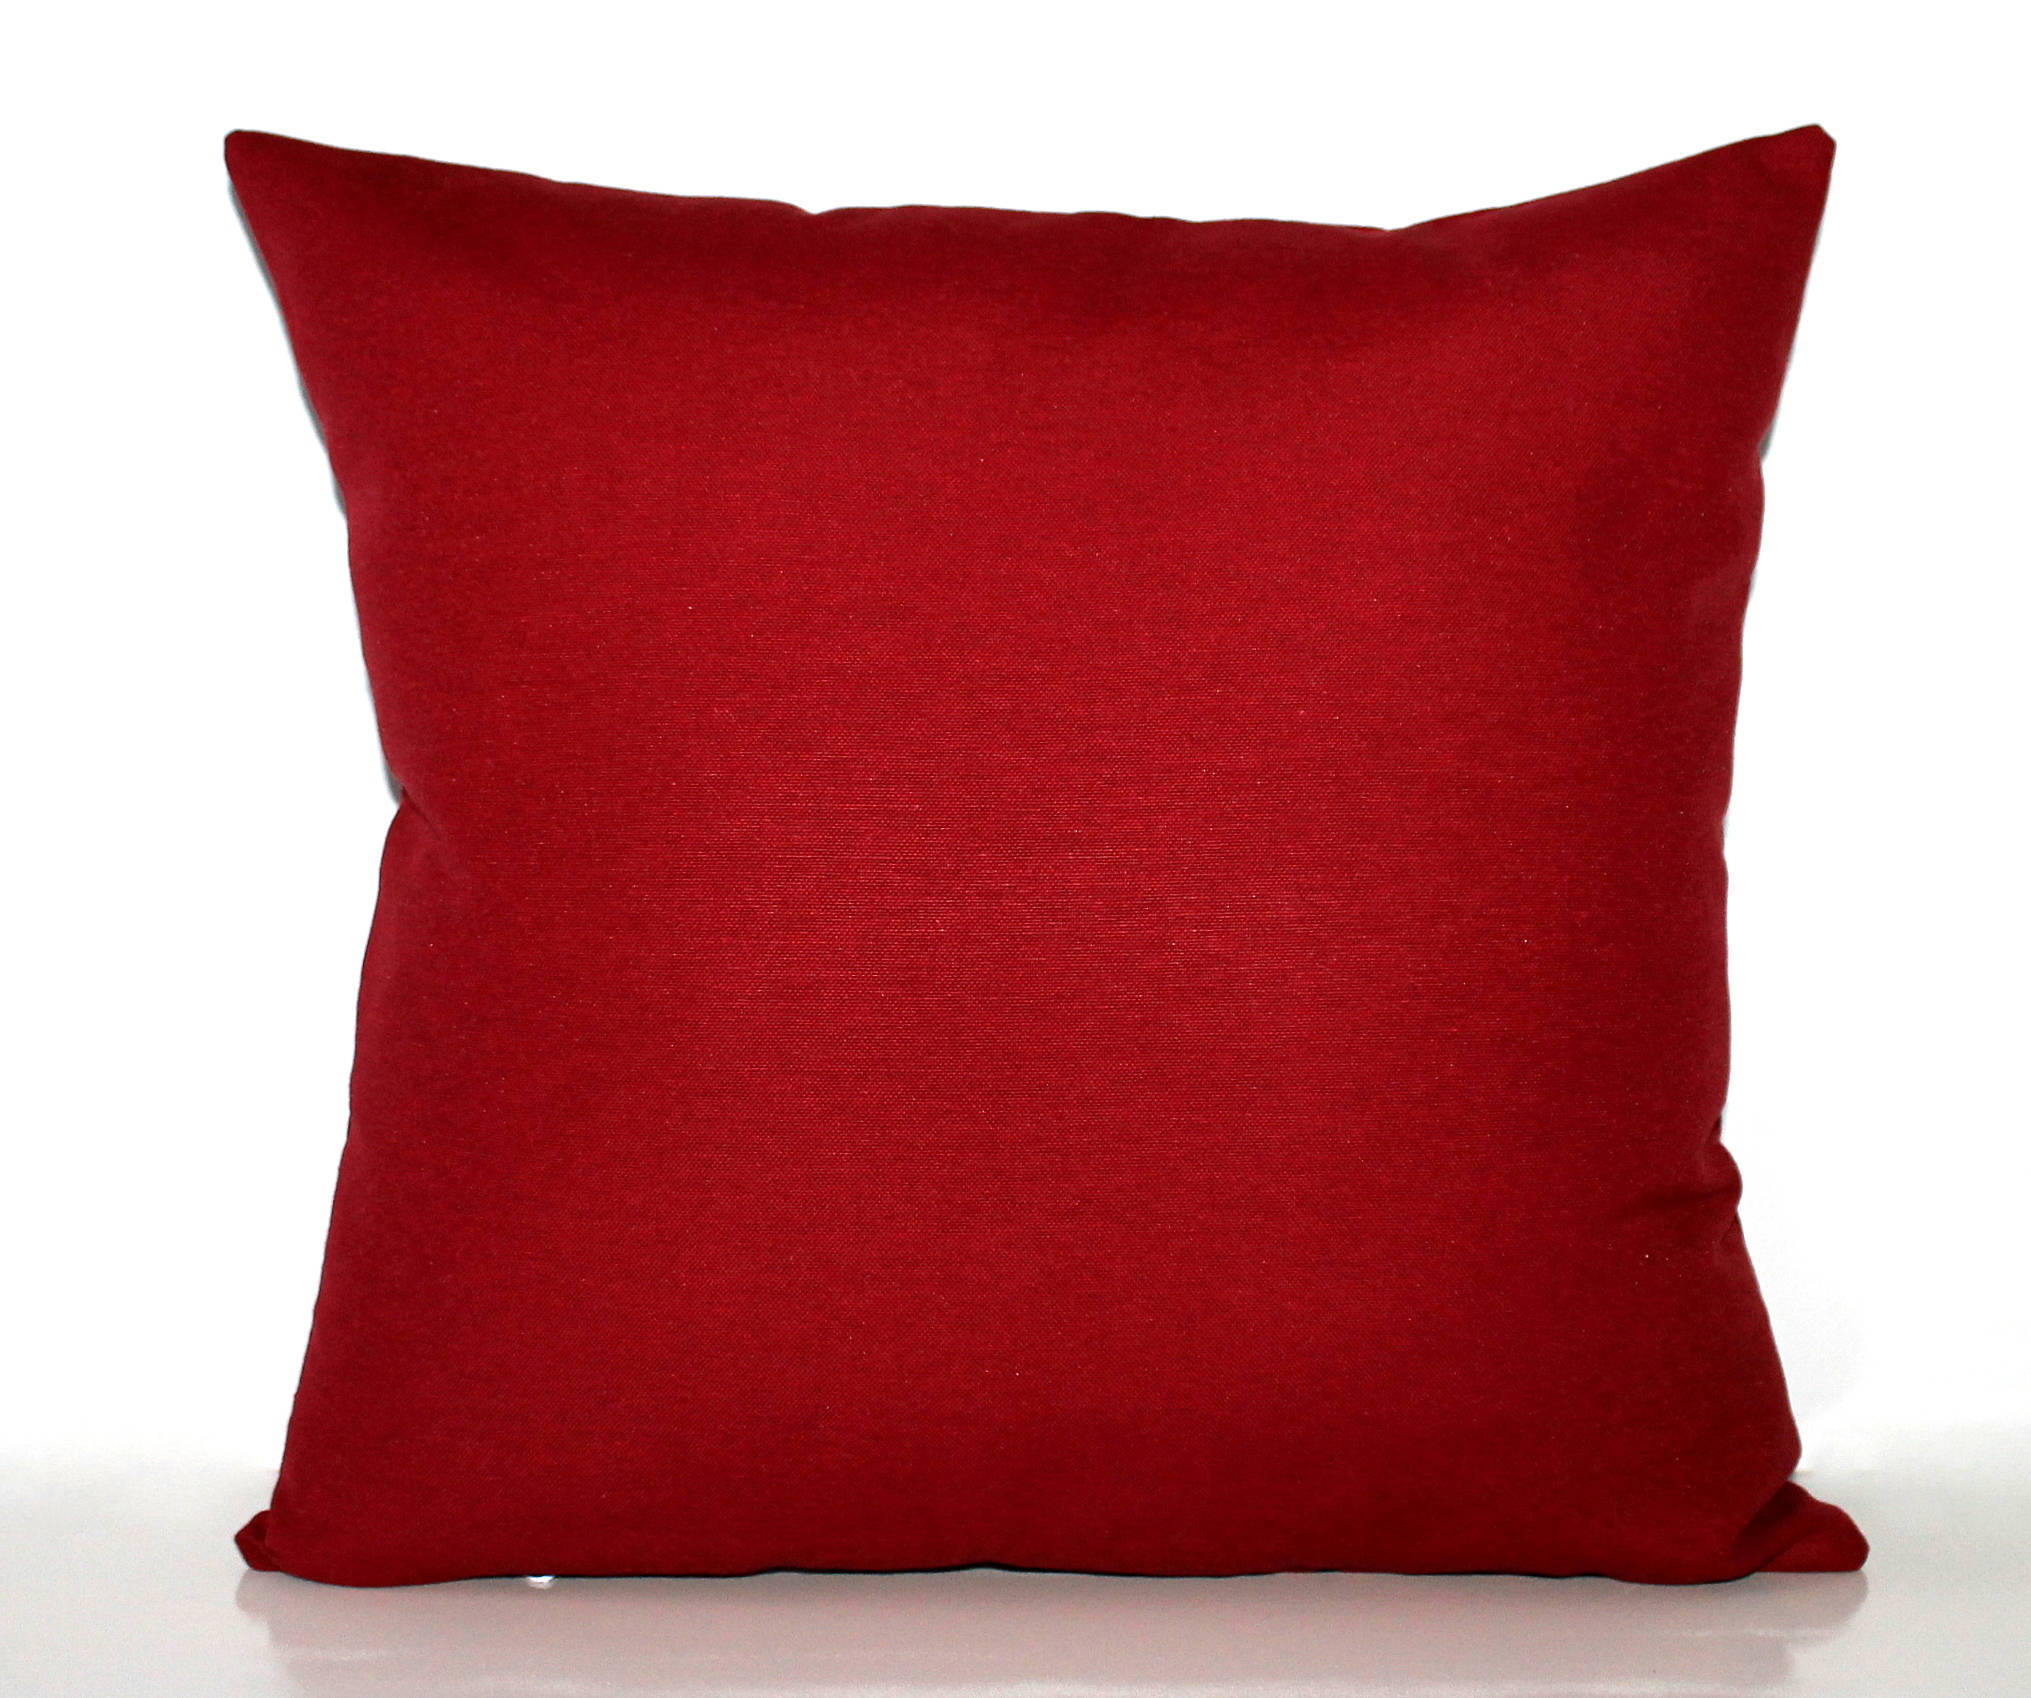 Red Desert Dawn Pillow 18x18 Down Filled 